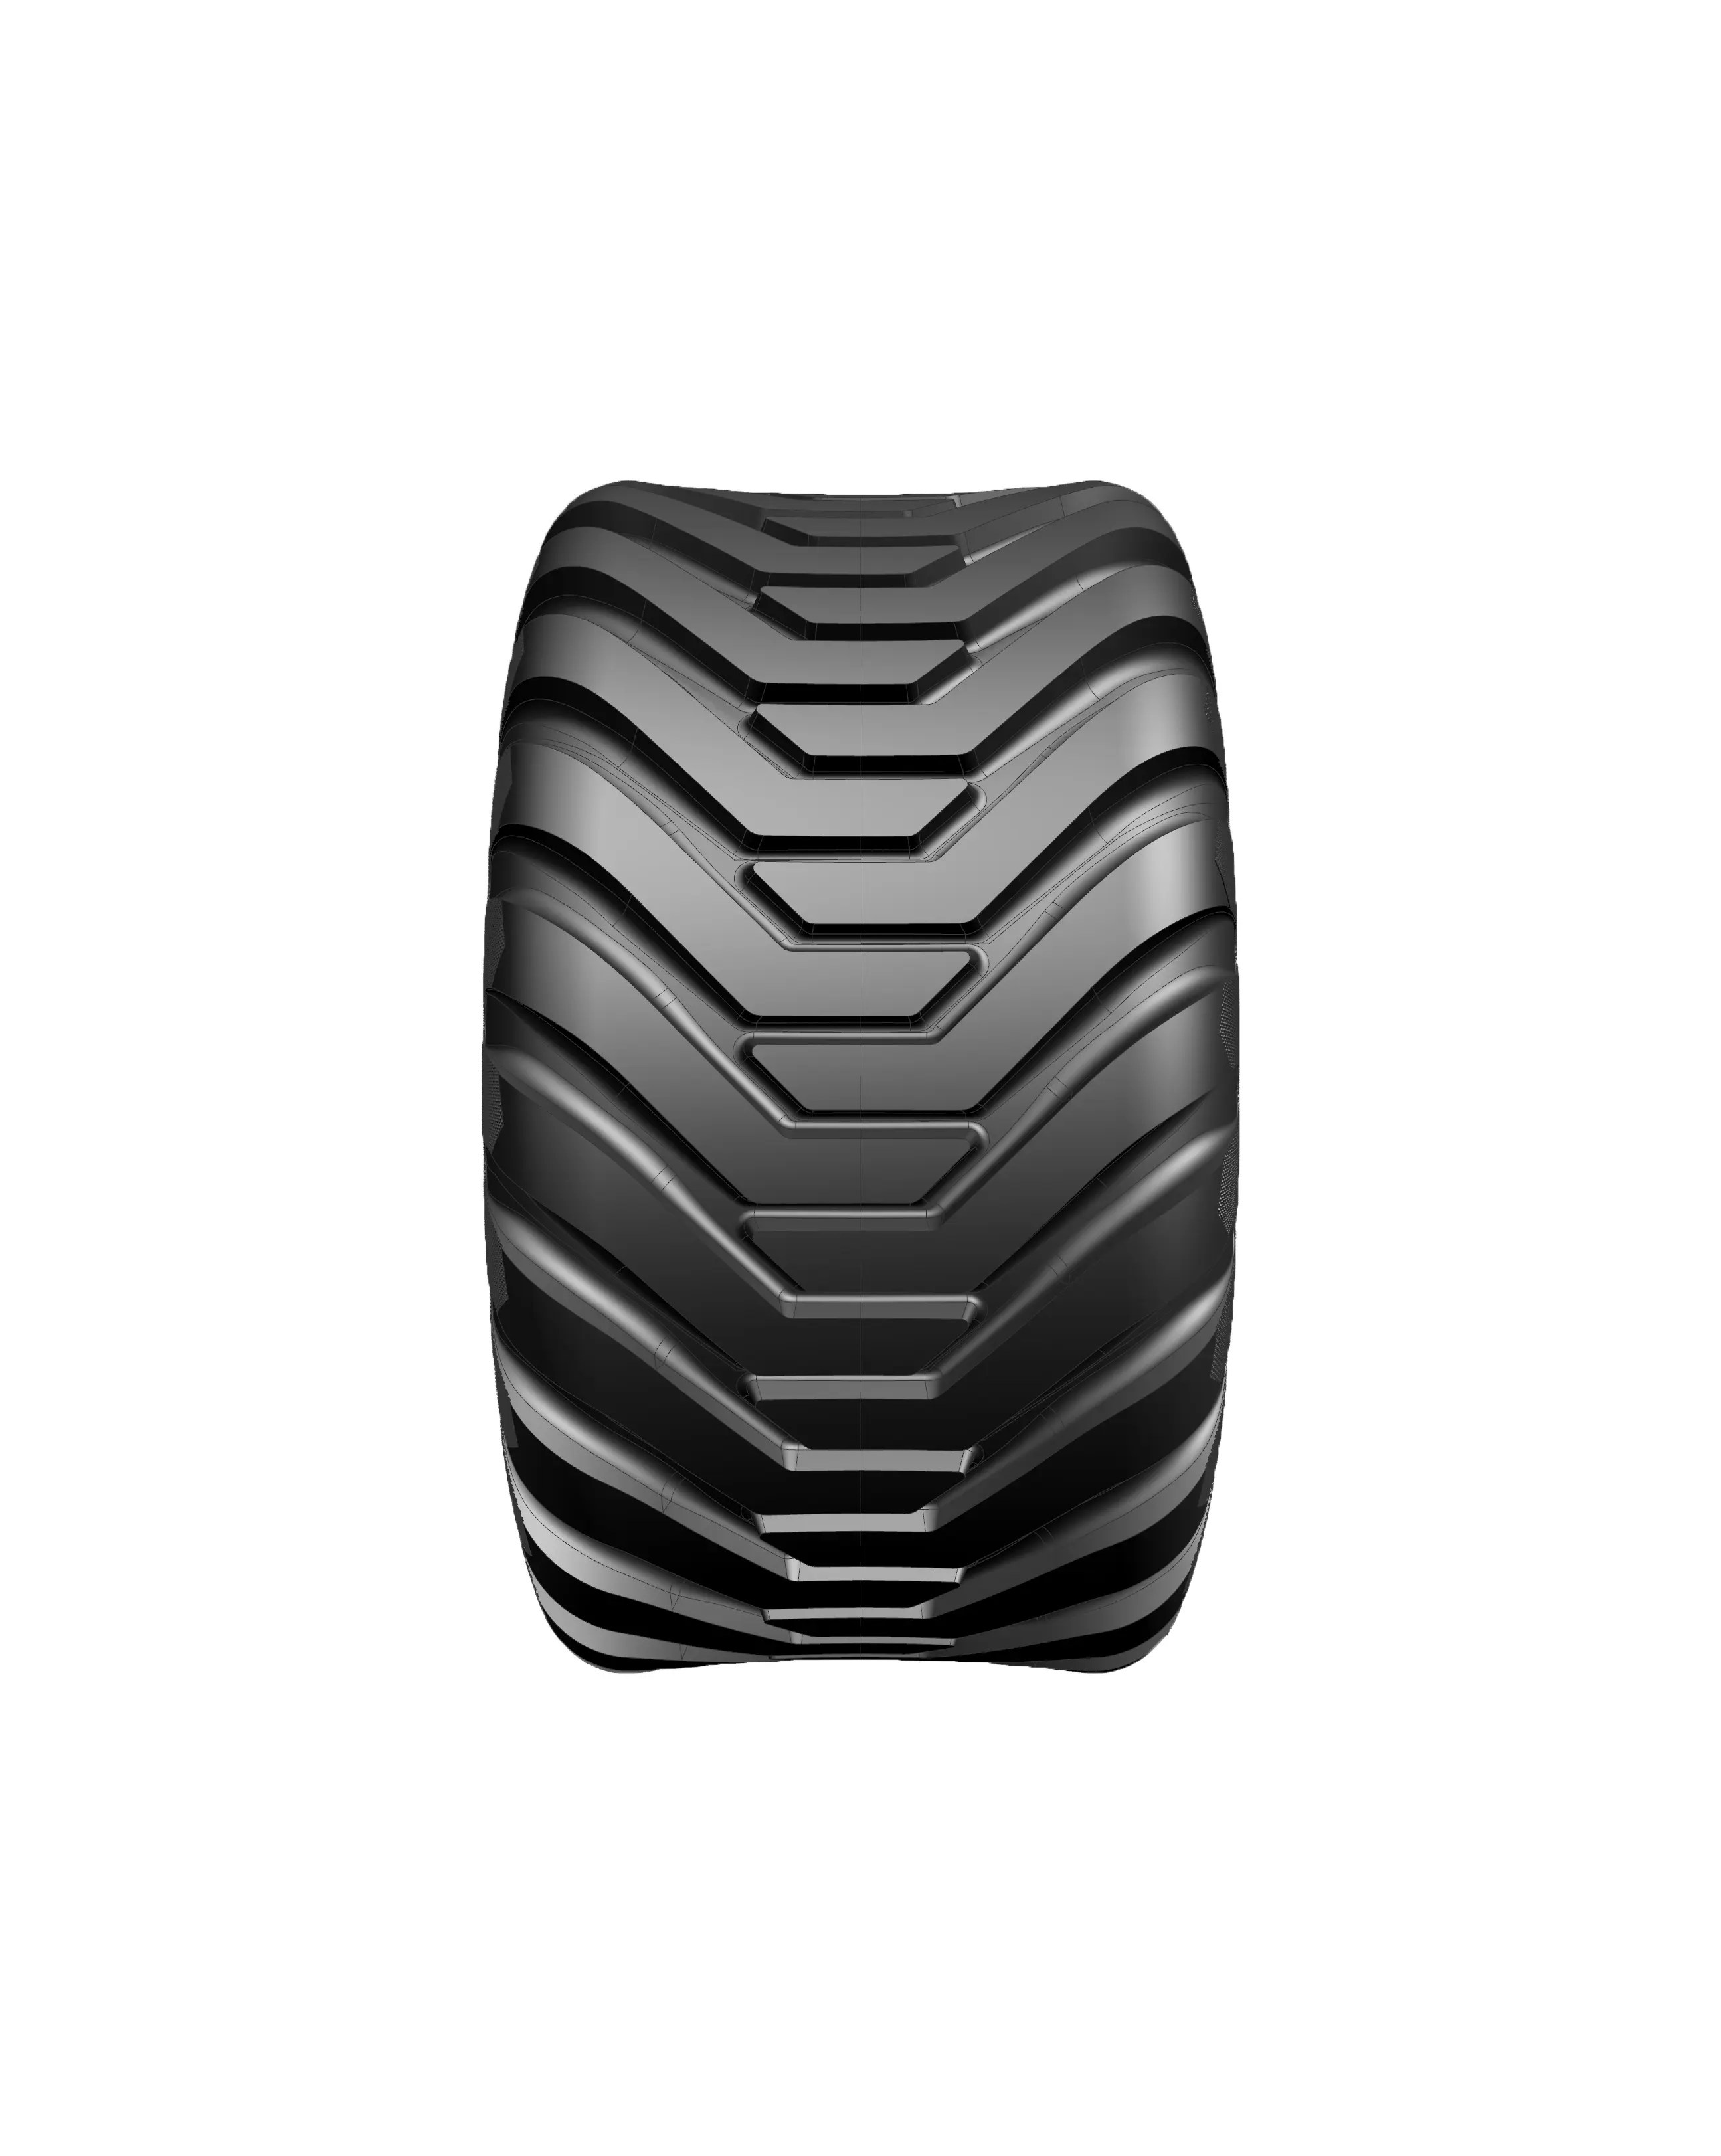 कृषि टायर ट्रैक्टर टायर 400/60-15.5imp उच्च गुणवत्ता वाला टायर